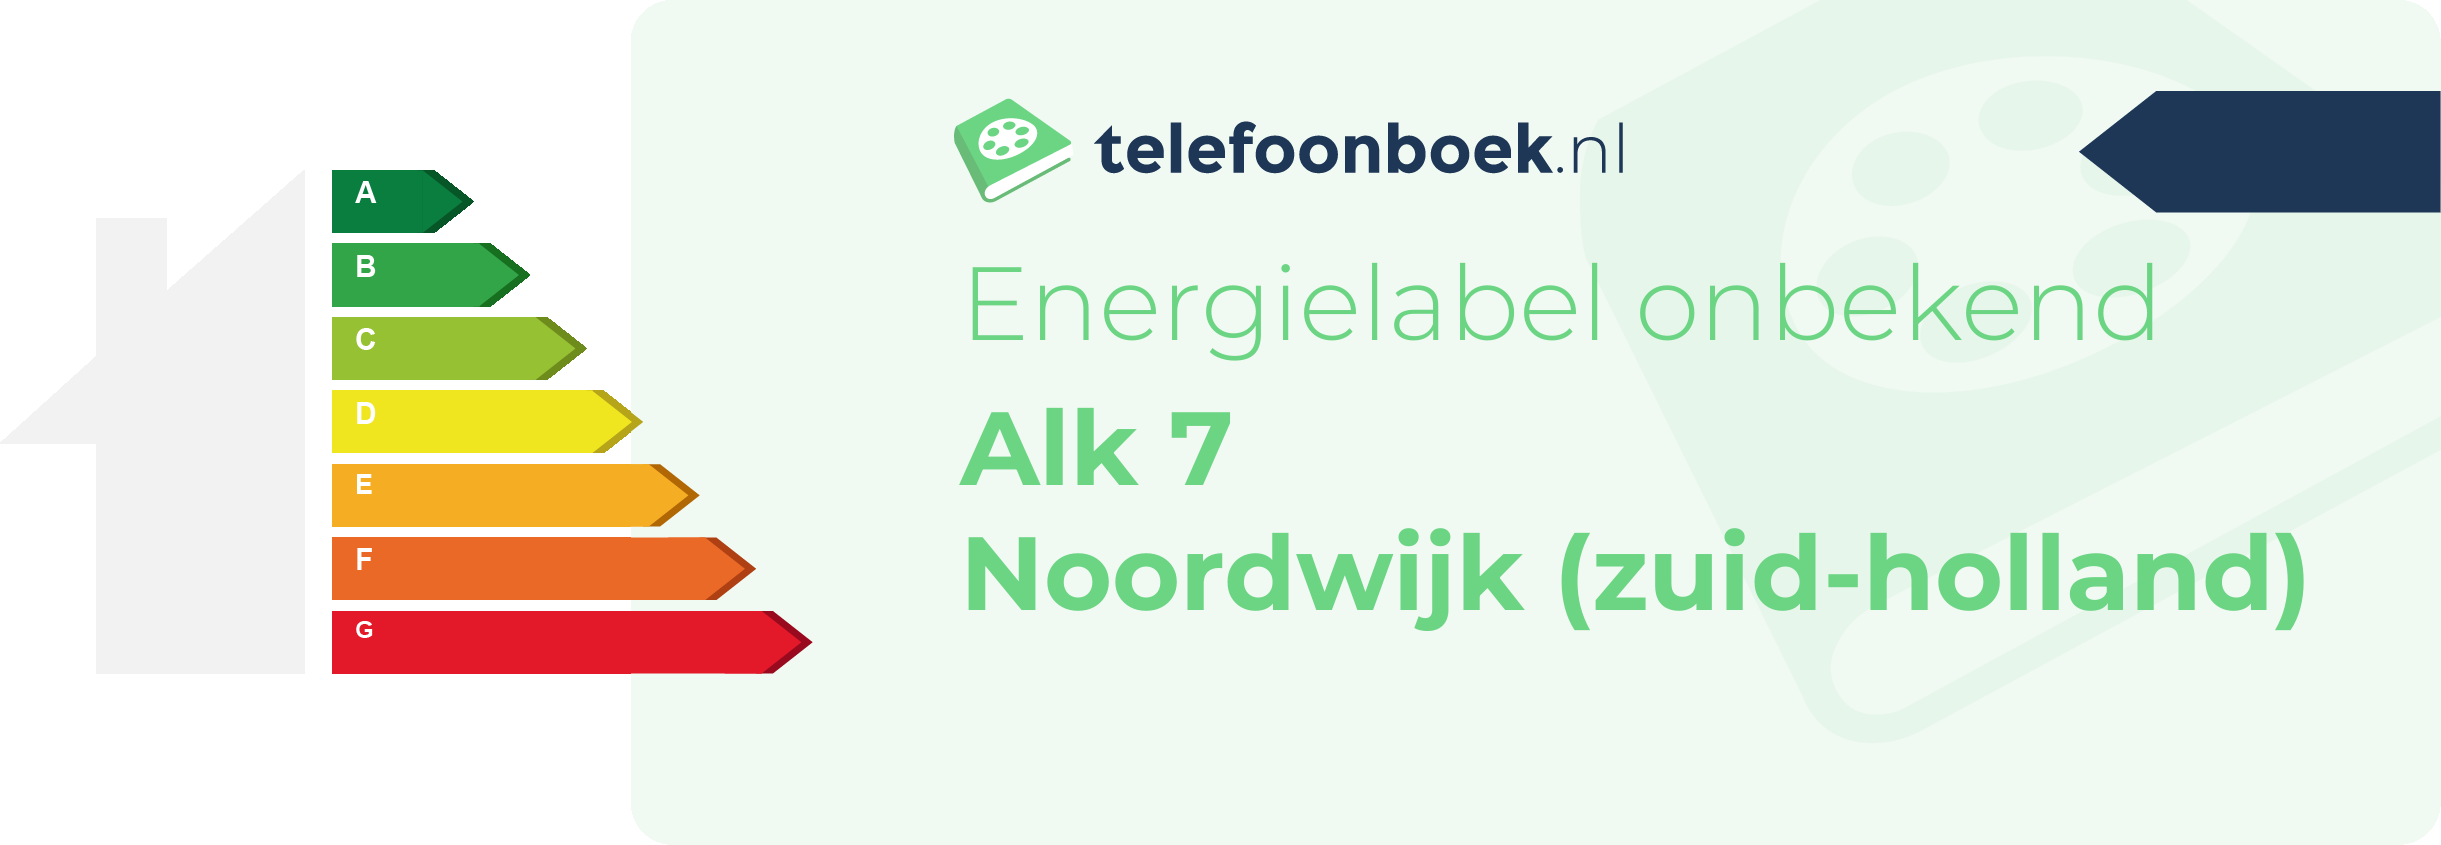 Energielabel Alk 7 Noordwijk (Zuid-Holland)